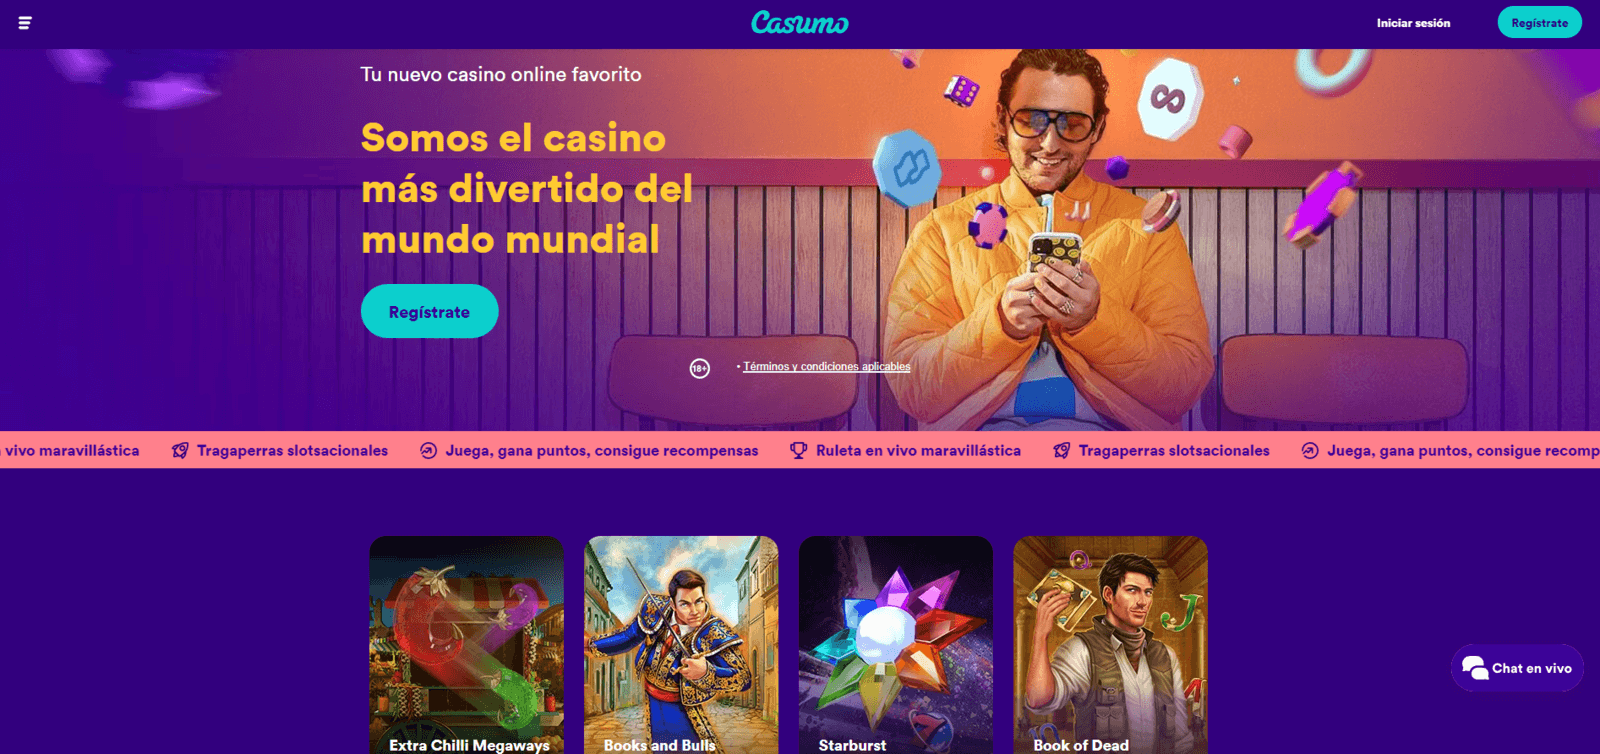 Reseña del casino Casumo en España de 2022